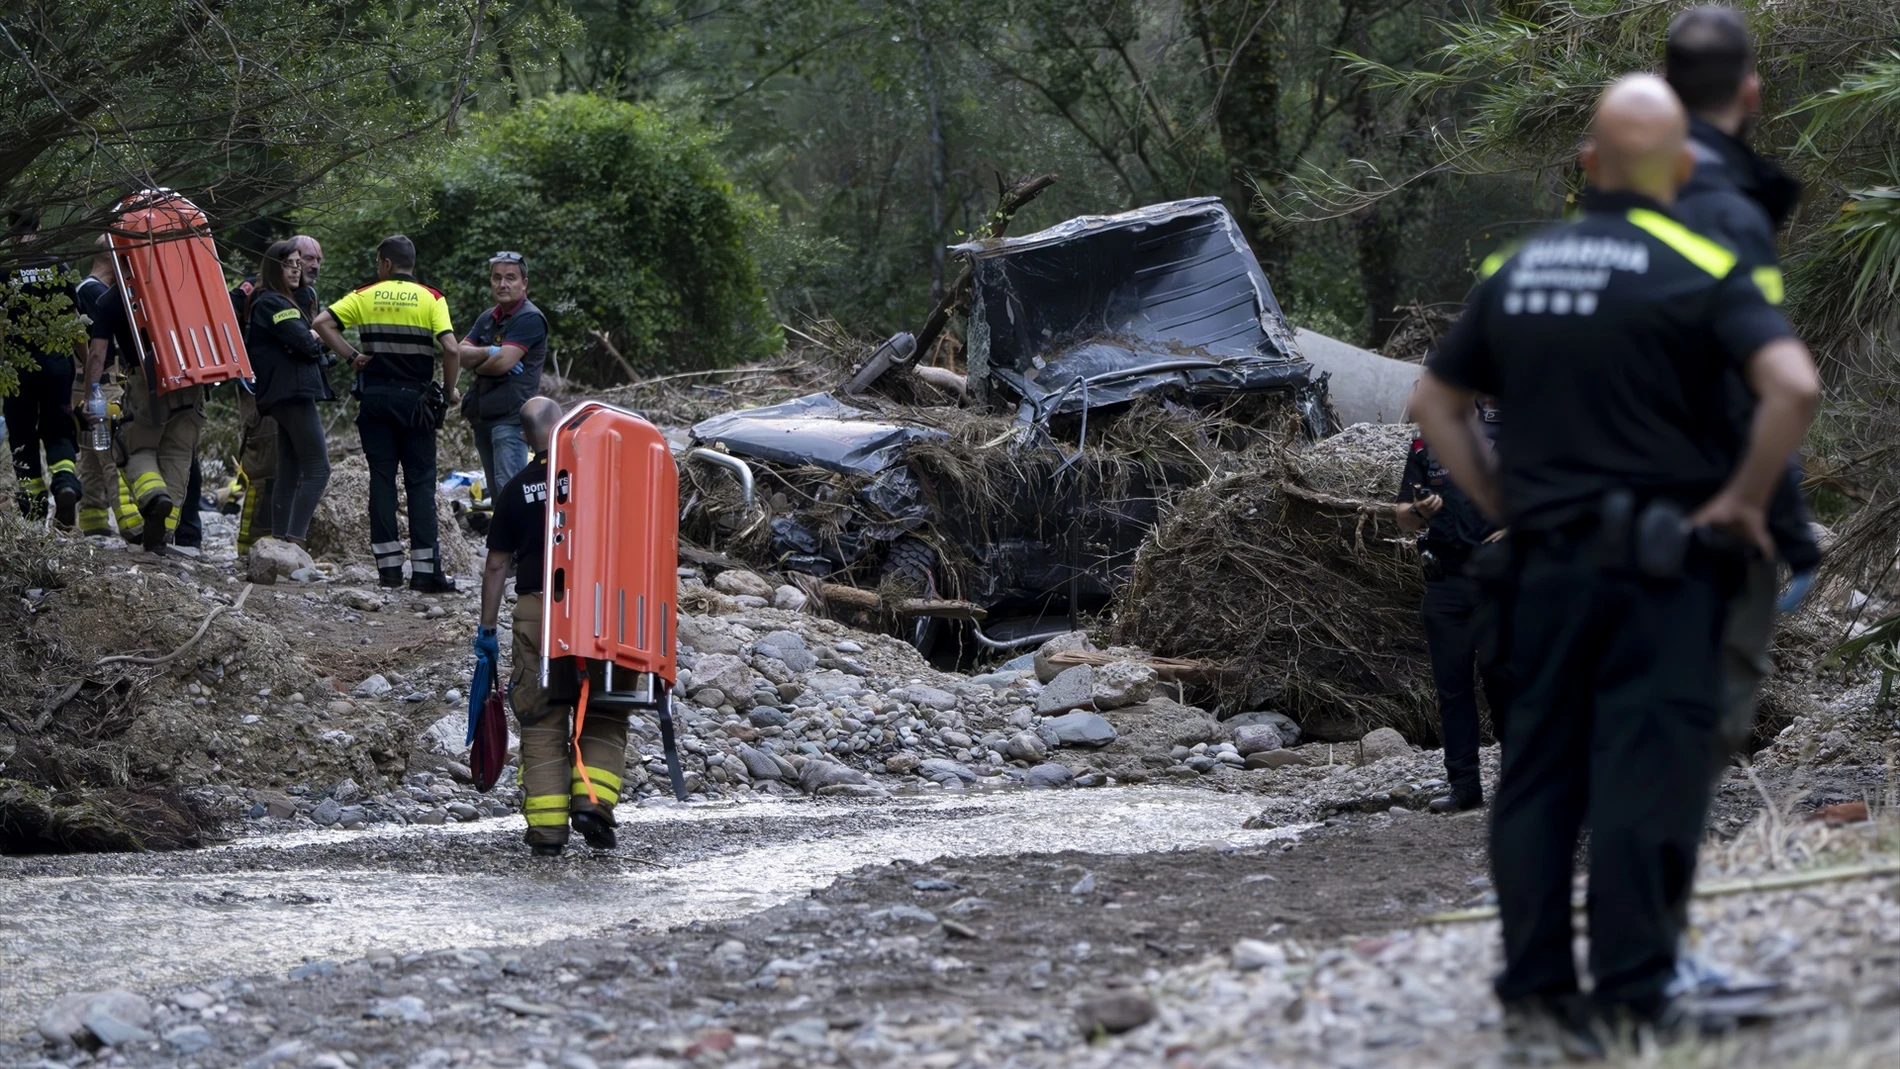 Encuentran un cadáver en un coche en una riera seca de Ullastrell (Barcelona) tras las lluvias